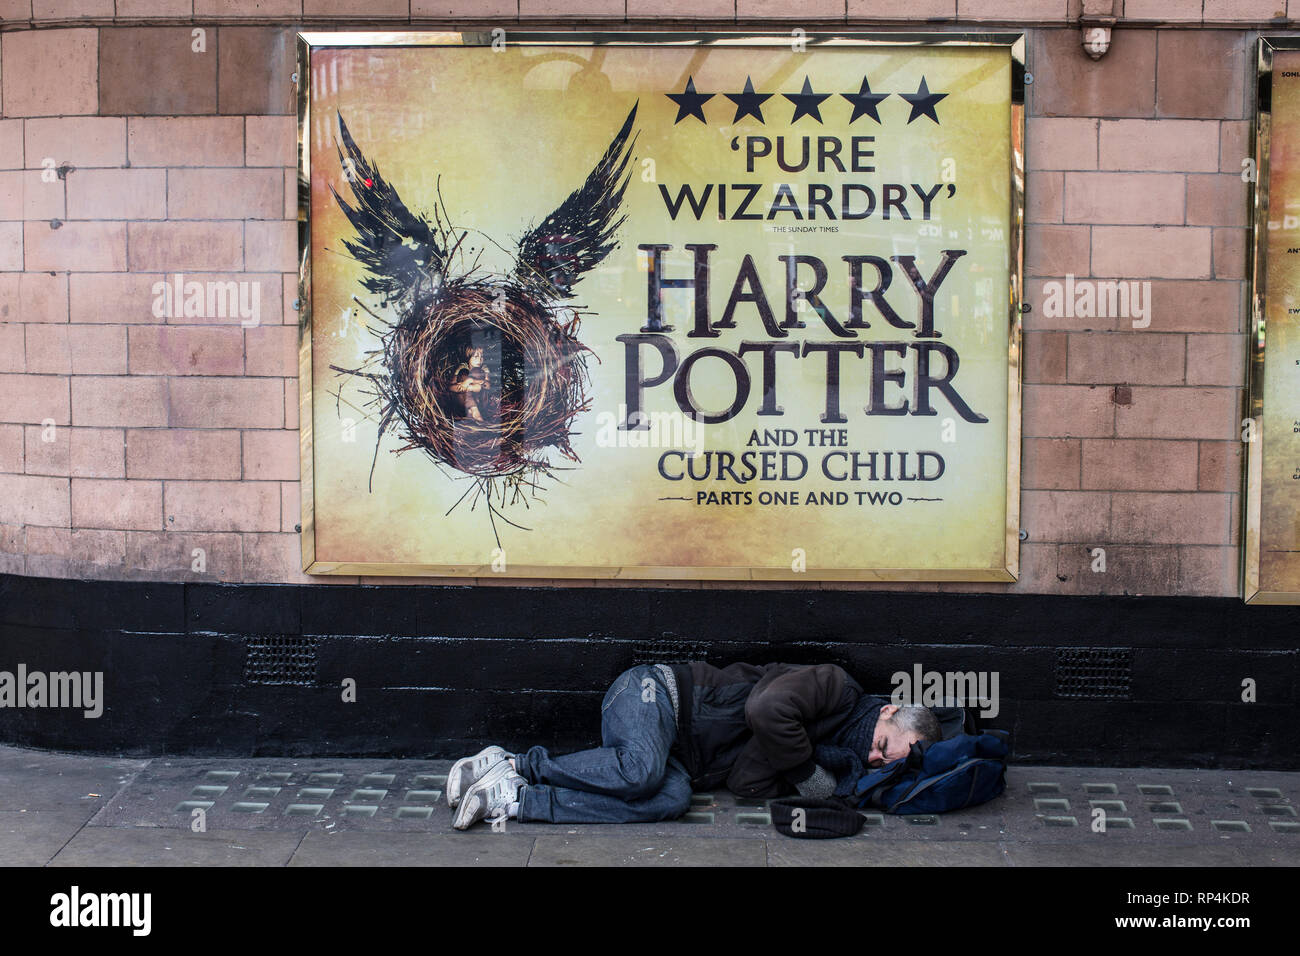 Obdachlose Süchtige schlafen auf dem Bürgersteig unter dem Schild von Harry Potter vor dem Palace Theater am Cambridge Circus, London, Großbritannien Stockfoto